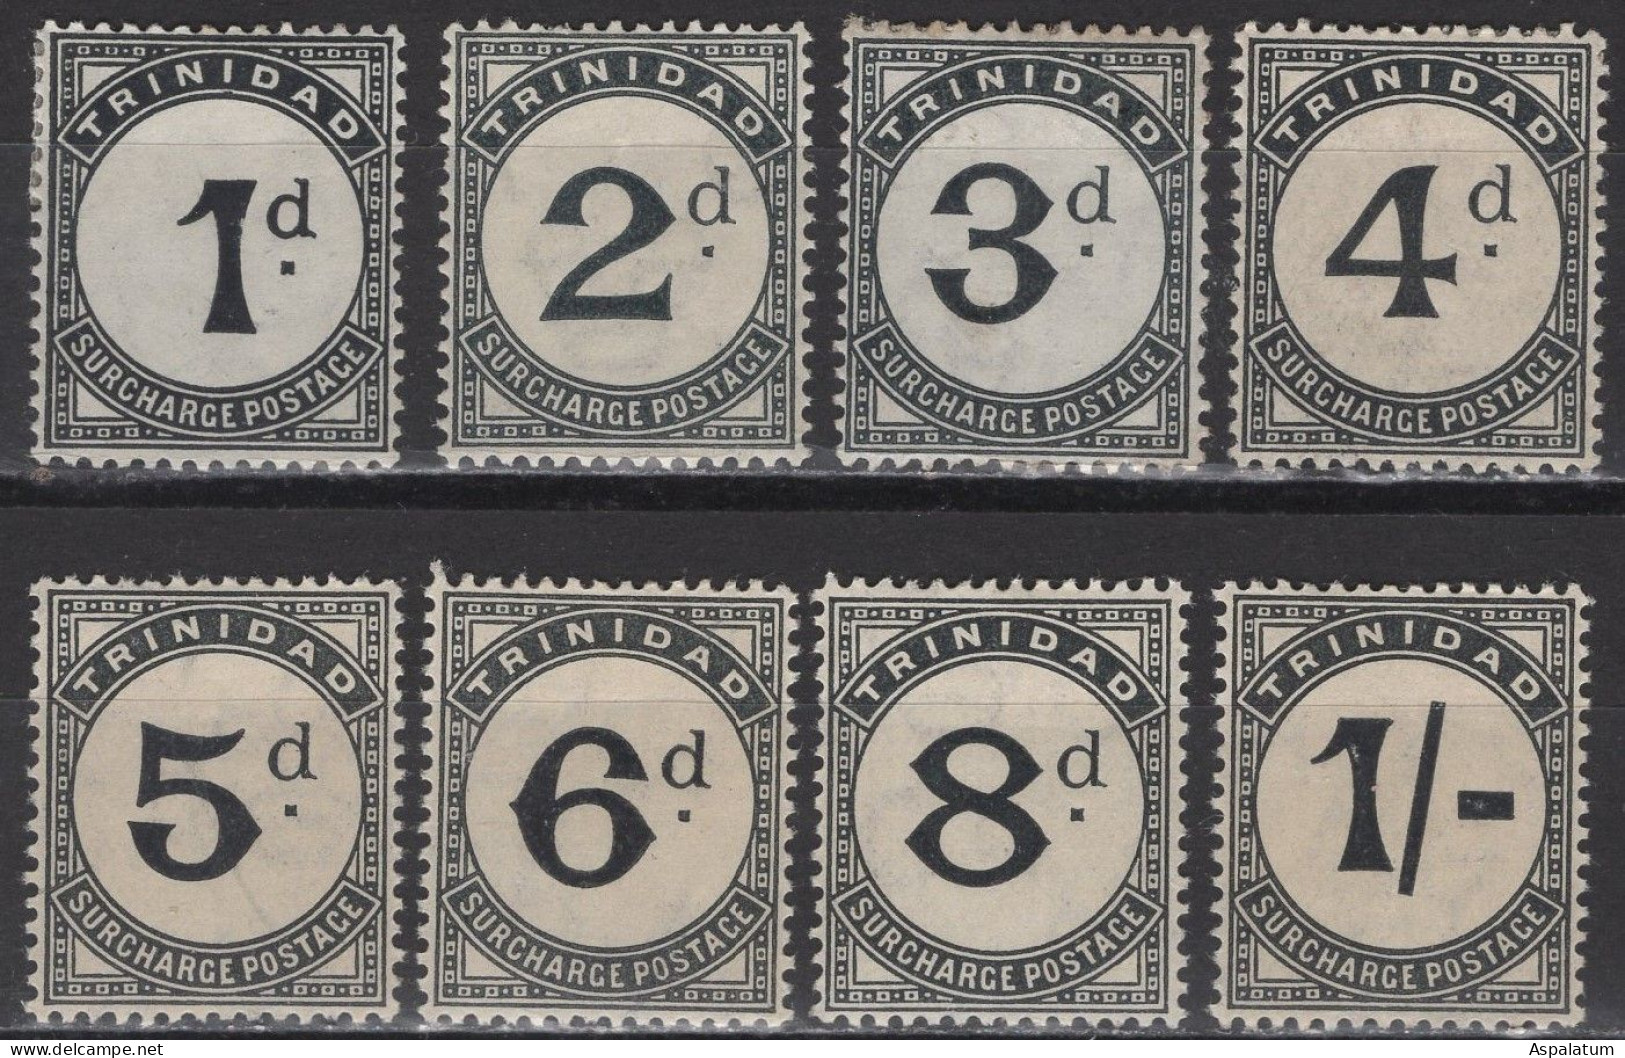 Trinidad - Postage Due - Set Of 8 - Mi 10~17 - 1906 - Trinidad Y Tobago